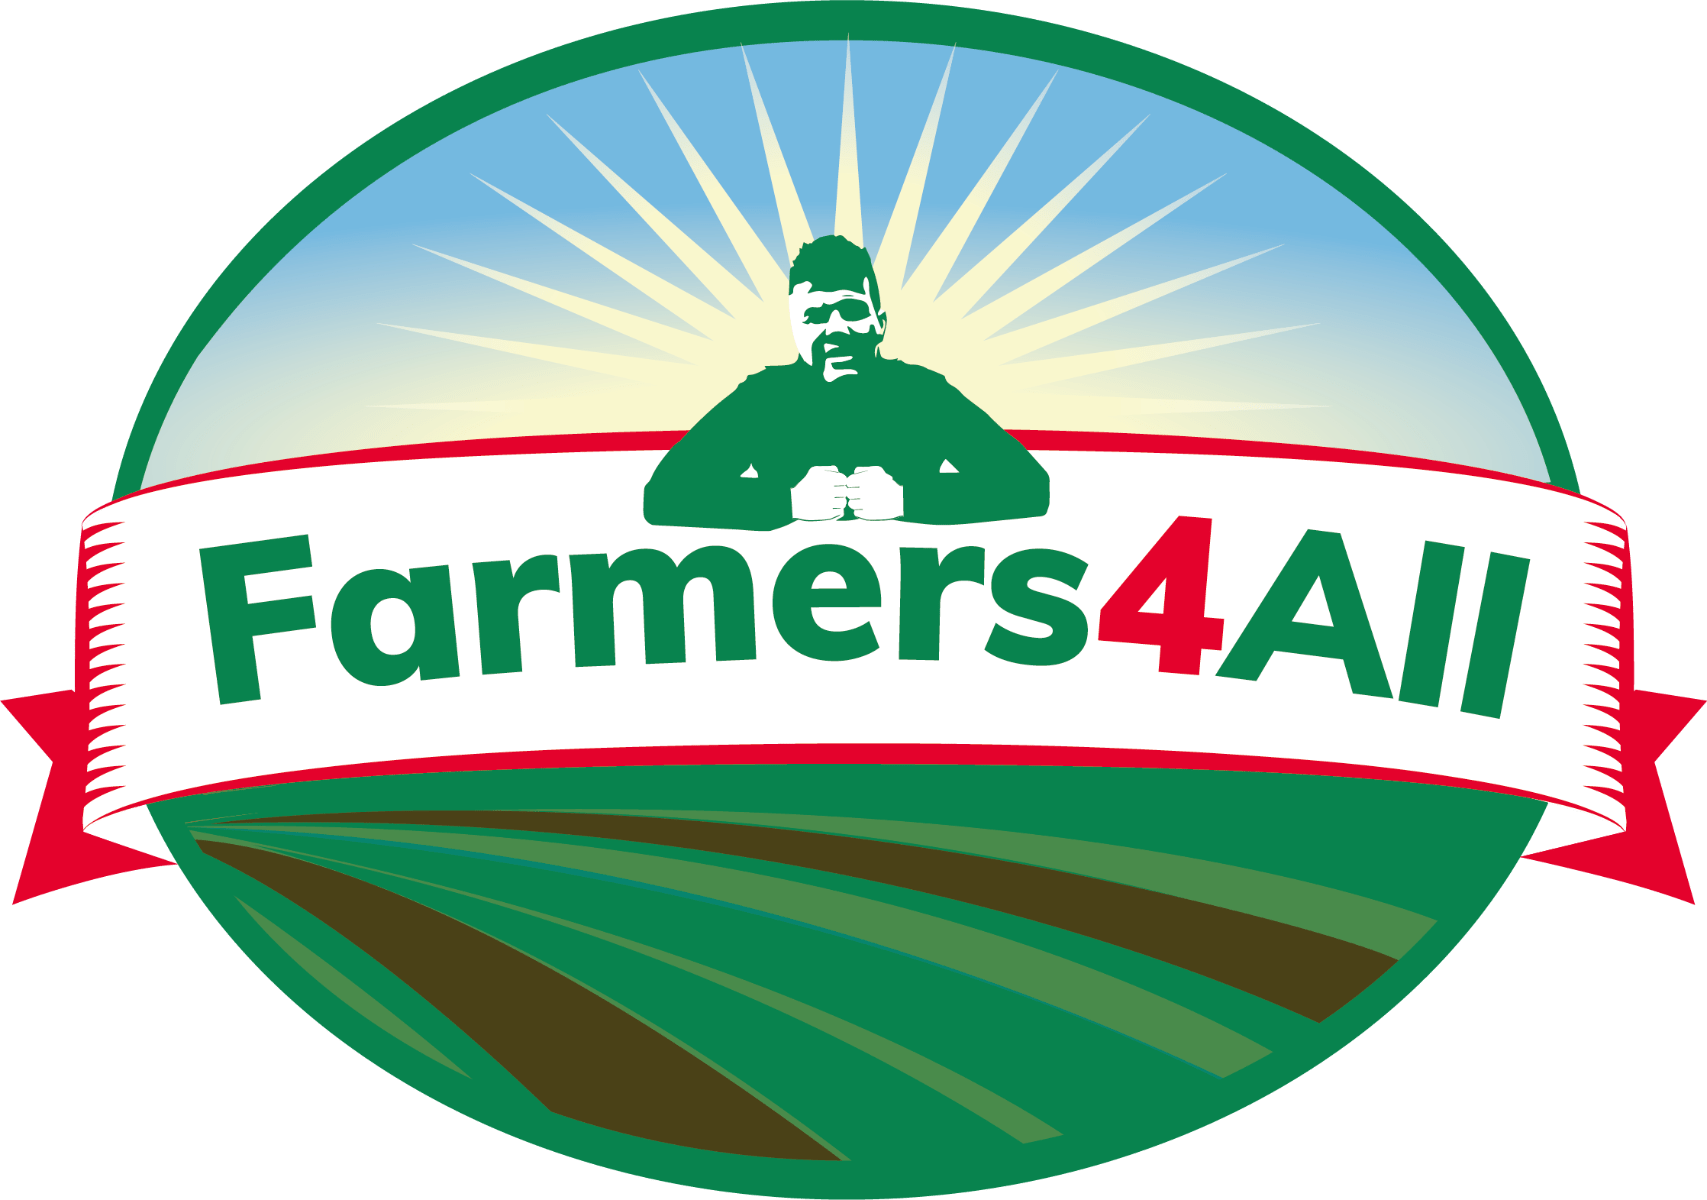 Farmers4all